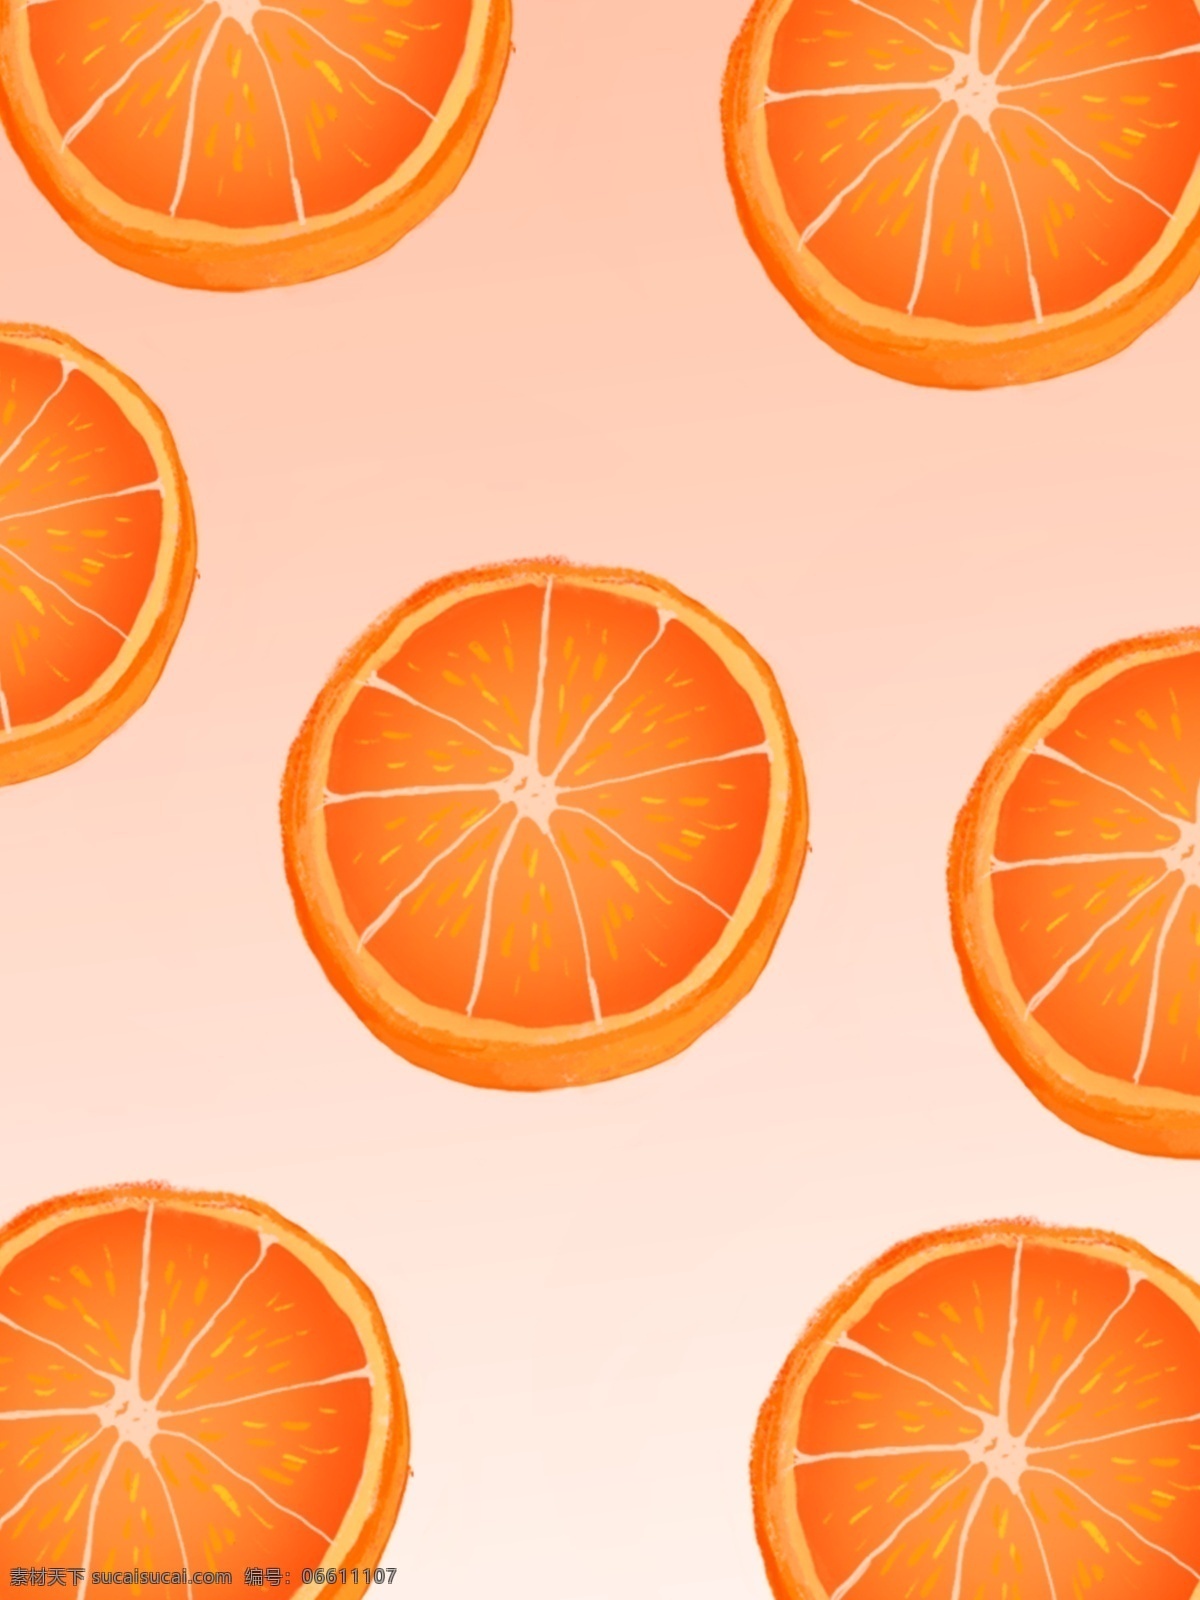 橙子背景 橙子水果背景 水果切片 水果主题 橙子切片 手绘水果 水彩水果 矢量 水果 水果素材 新鲜水果 矢量水果素材 卡通水果素材 卡通水果 橙子 橙汁 饮料 横切面 香橙 橙子矢量图 橘子 柑橘 甜橙 桔子 橙子图片 卡通橙子素材 卡通橙子 切开的橙子 橙子素材 矢量橙子素材 矢量橙子